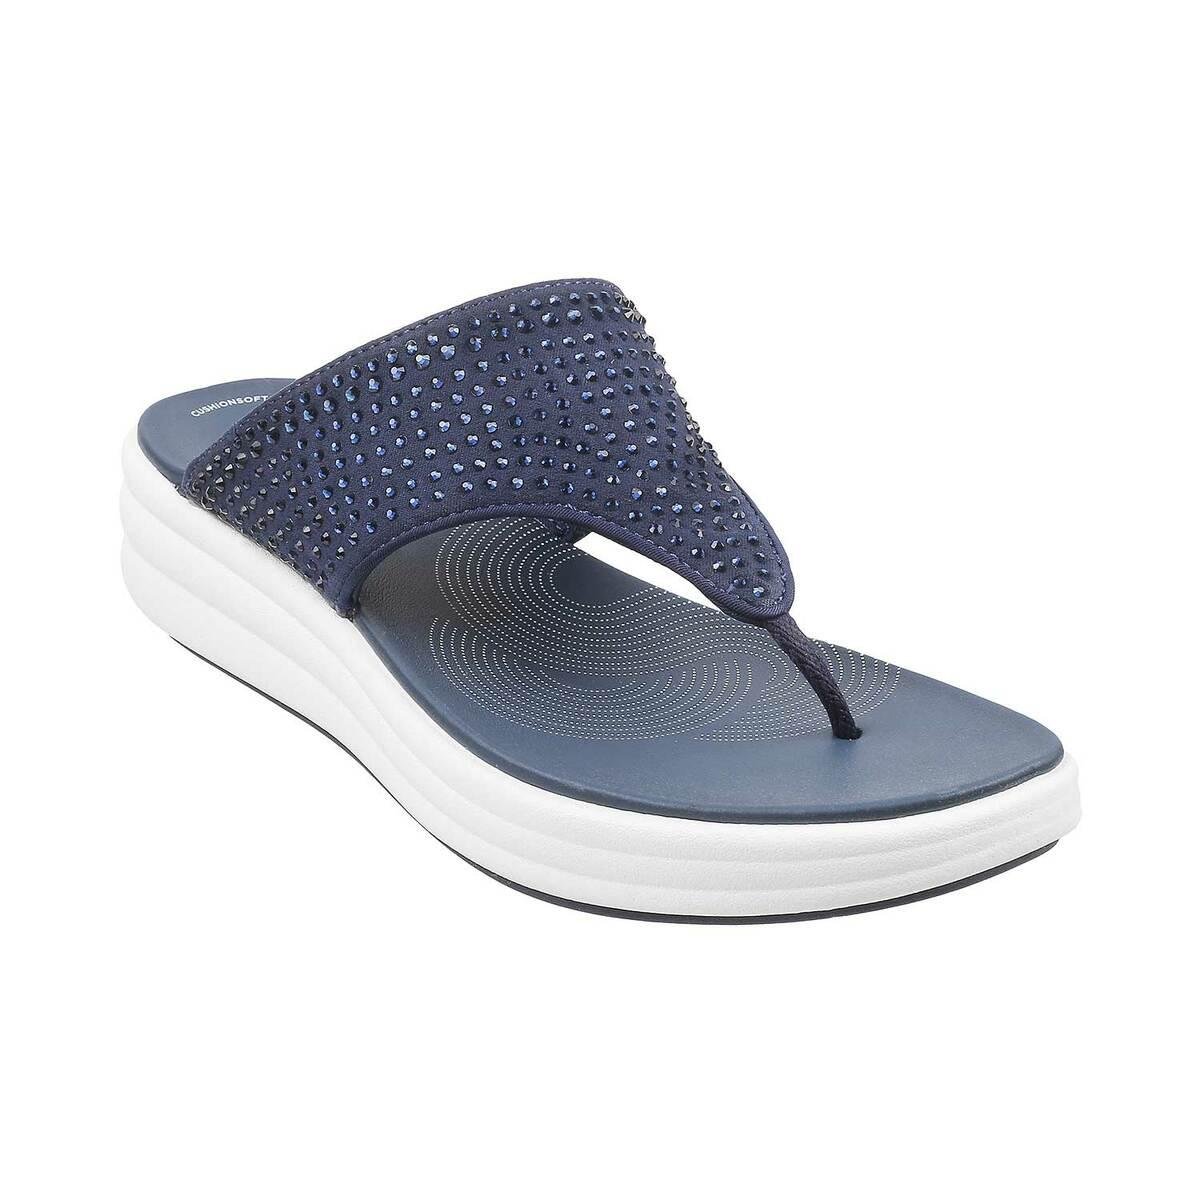 Buy Women Navy Casual Slip Ons Online | SKU: 160-166278-17-5-Metro Shoes